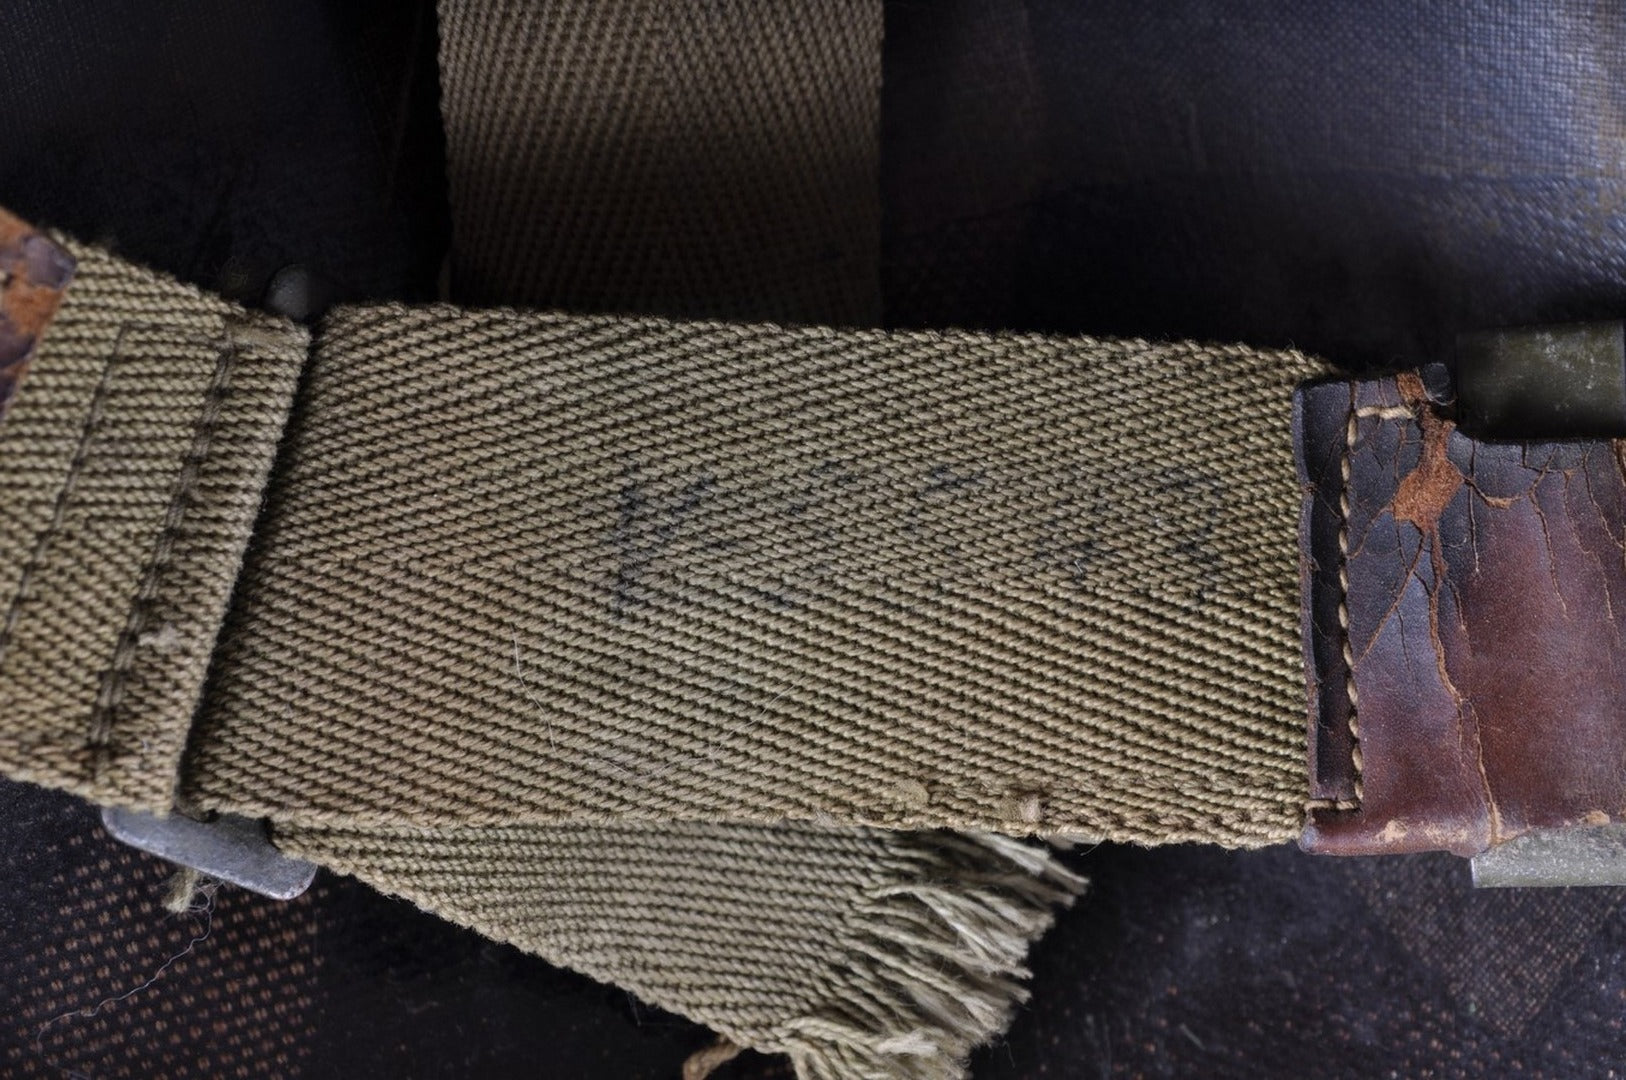 Liner de casque USM1 d'un Lieutenant de la 2nd Infantry Division